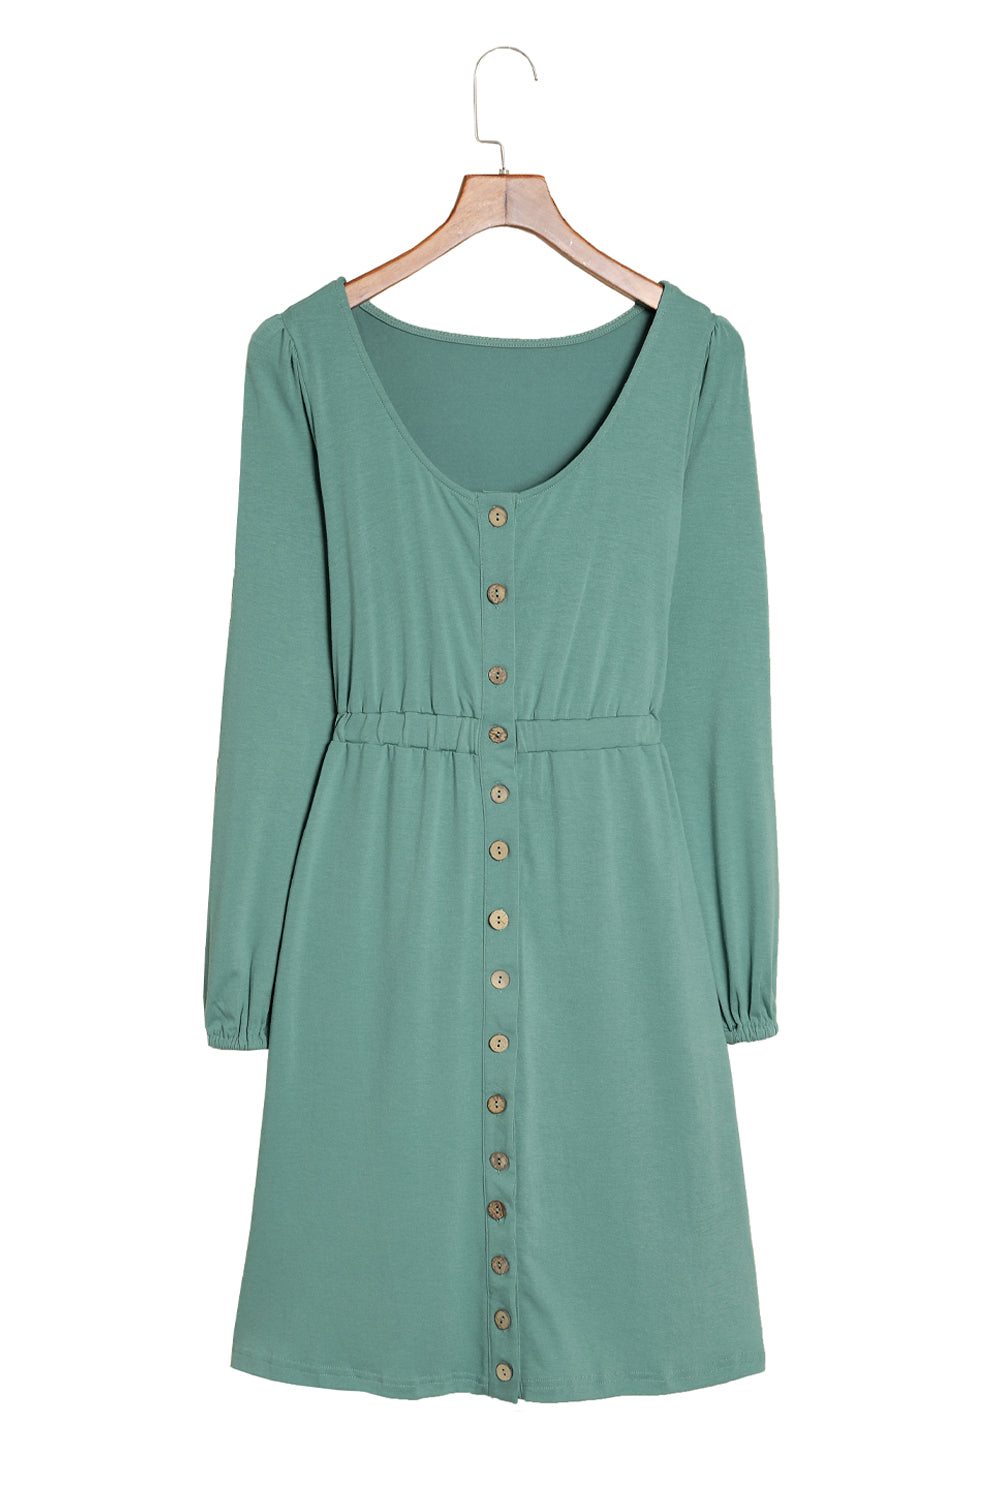 Grünes, langärmliges Kleid mit Knopfleiste und hoher Taille